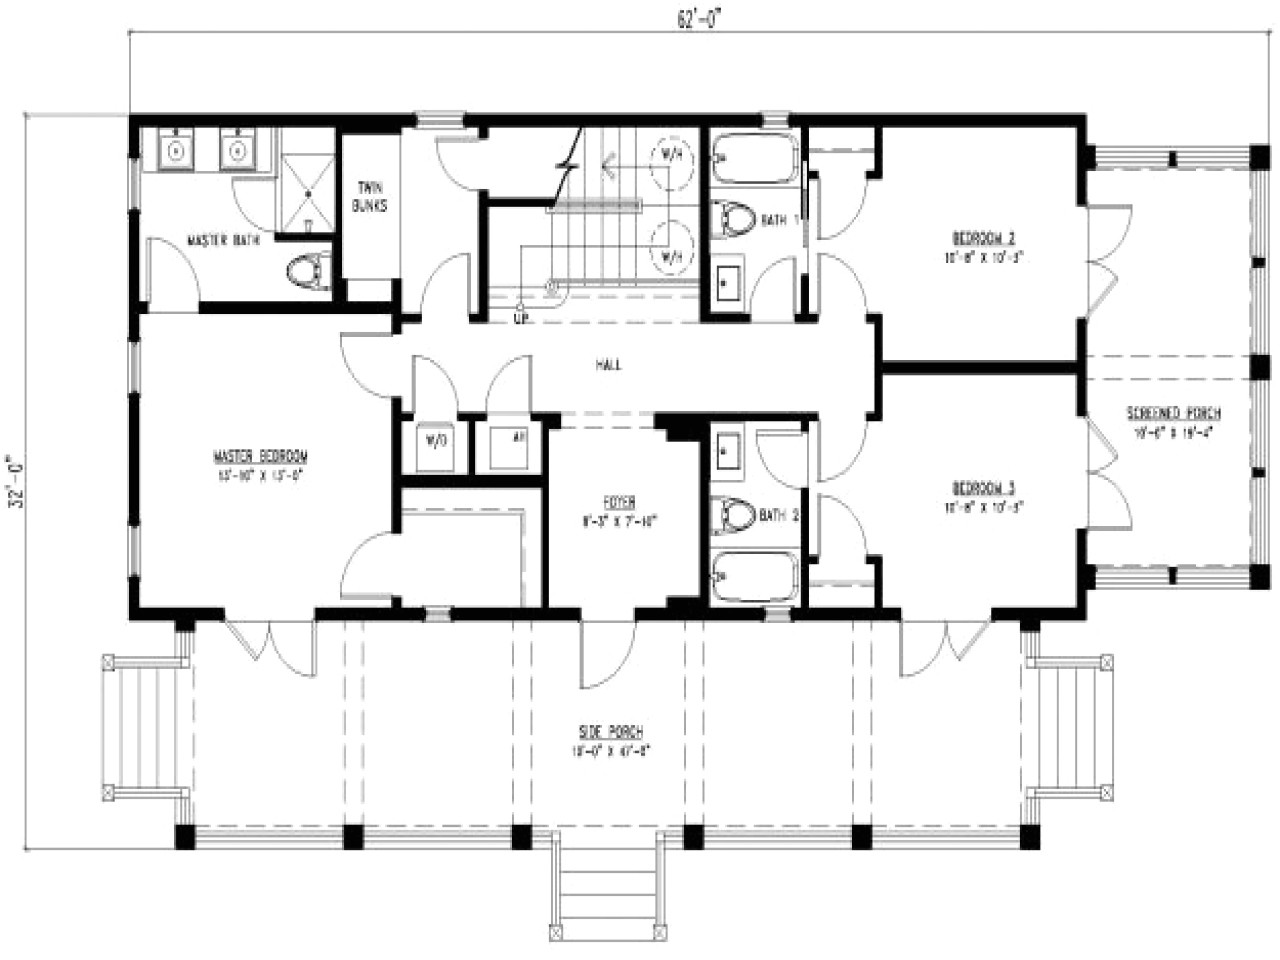 4 bedroom rectangular house plans